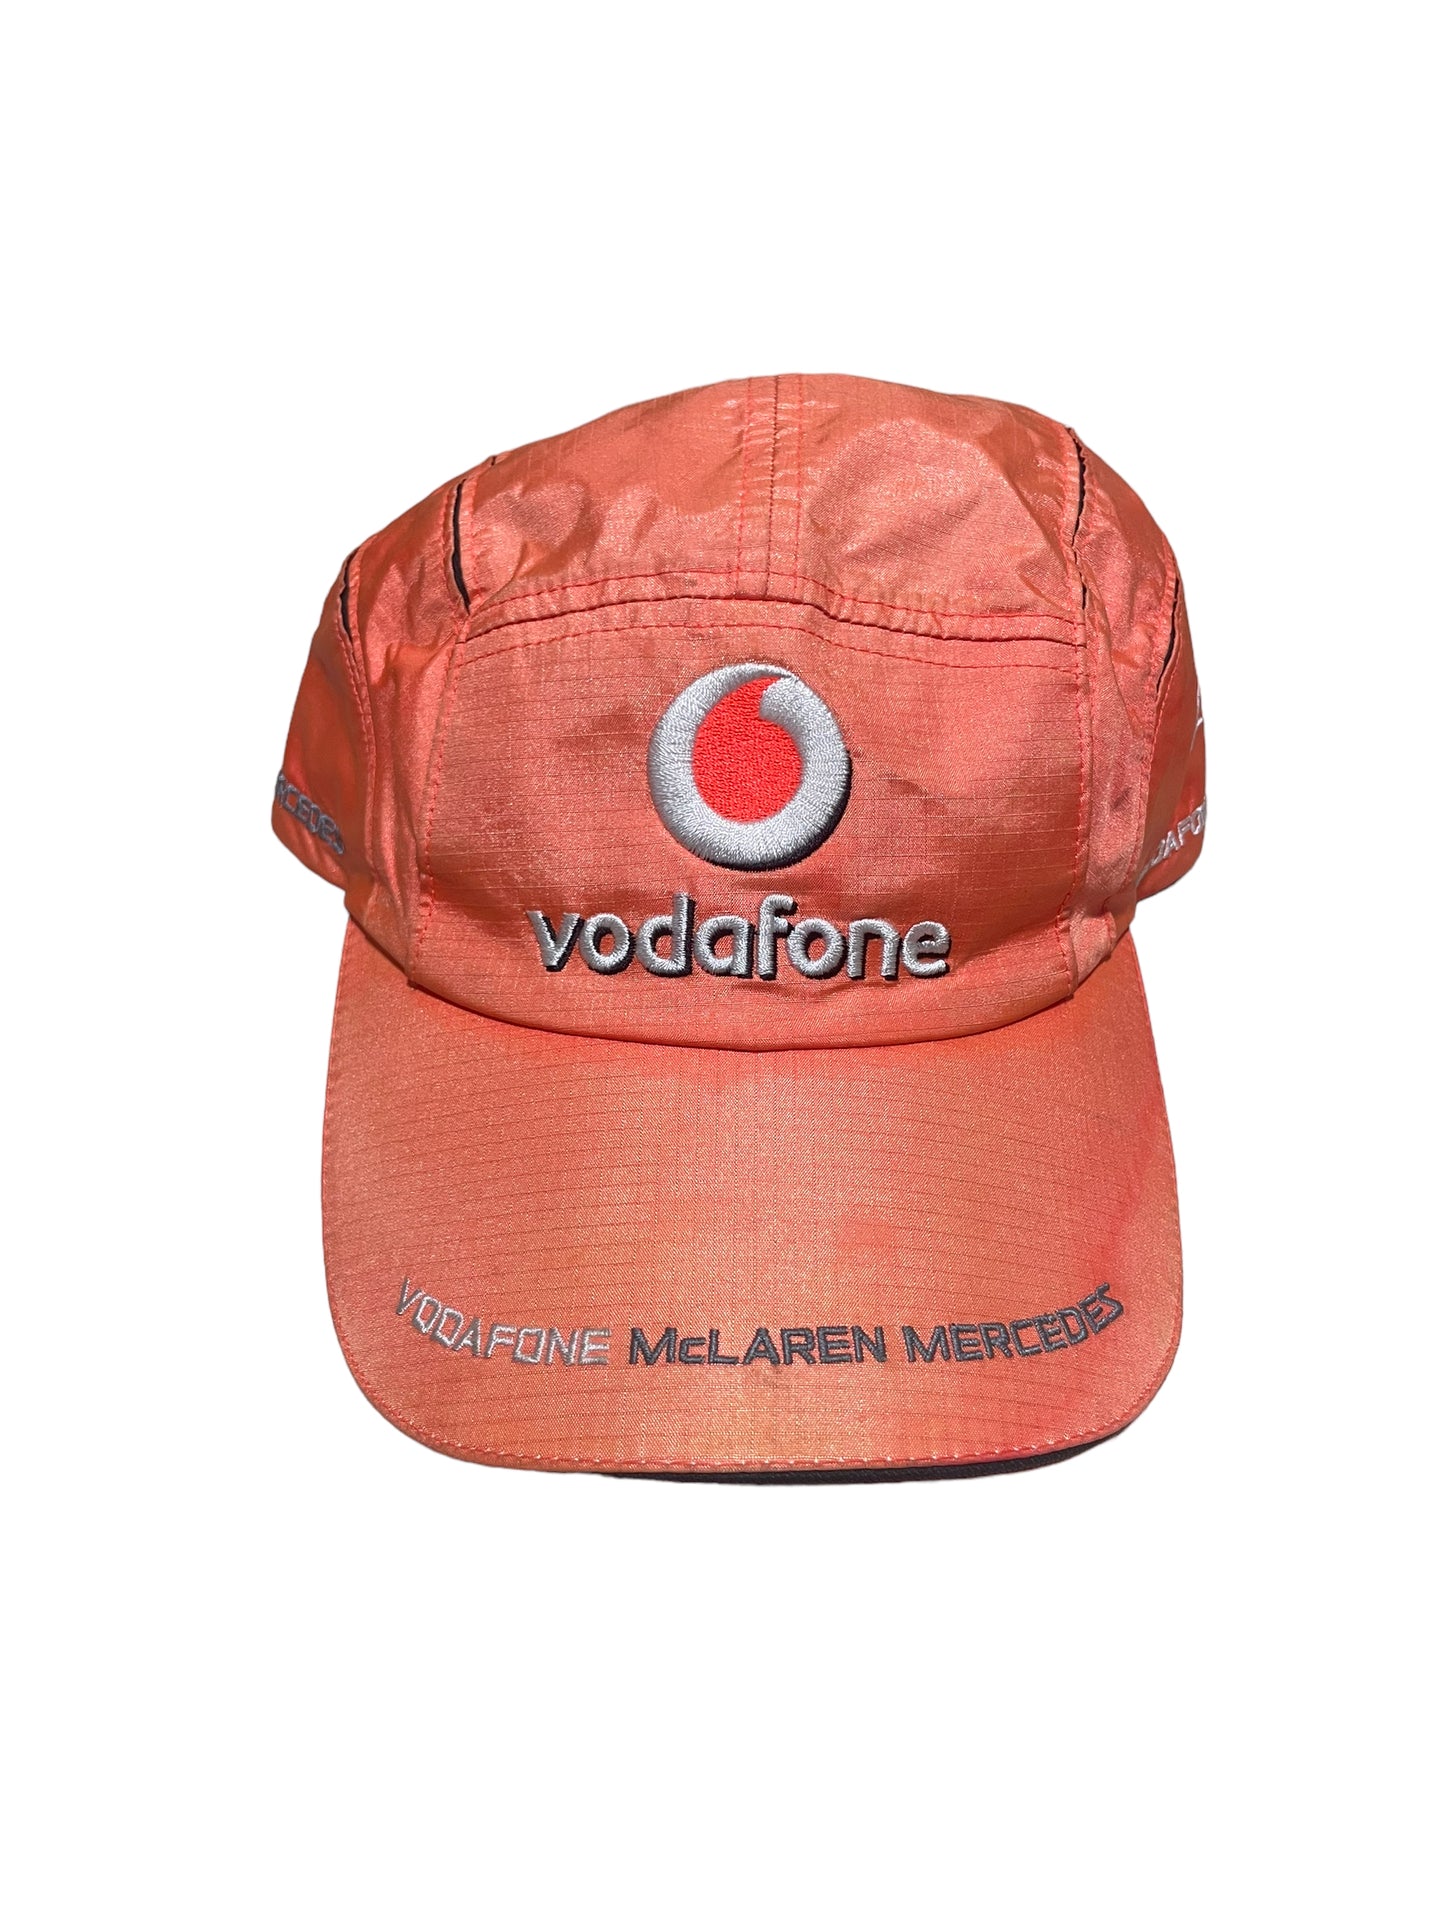 Vodafone McLaren Mercedes cap